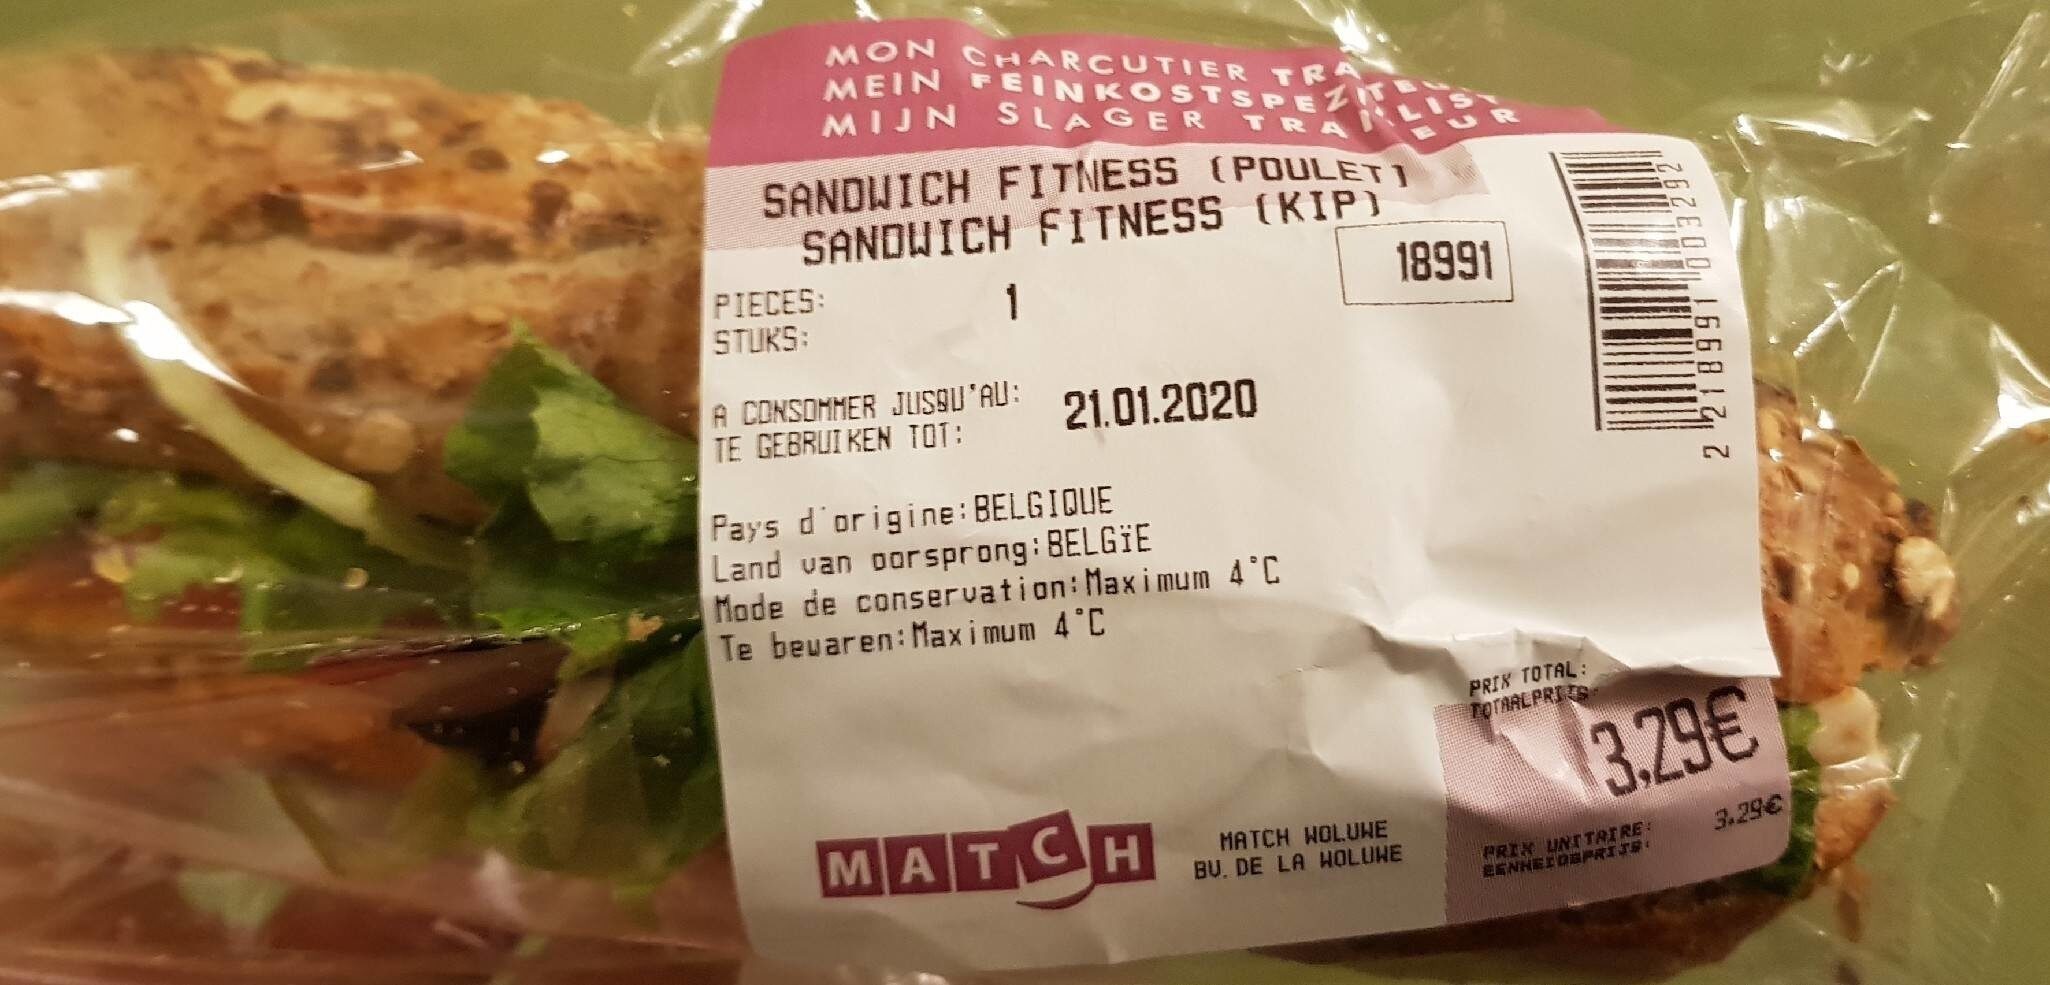 Sandwich fitness (poulet) Match - Produit